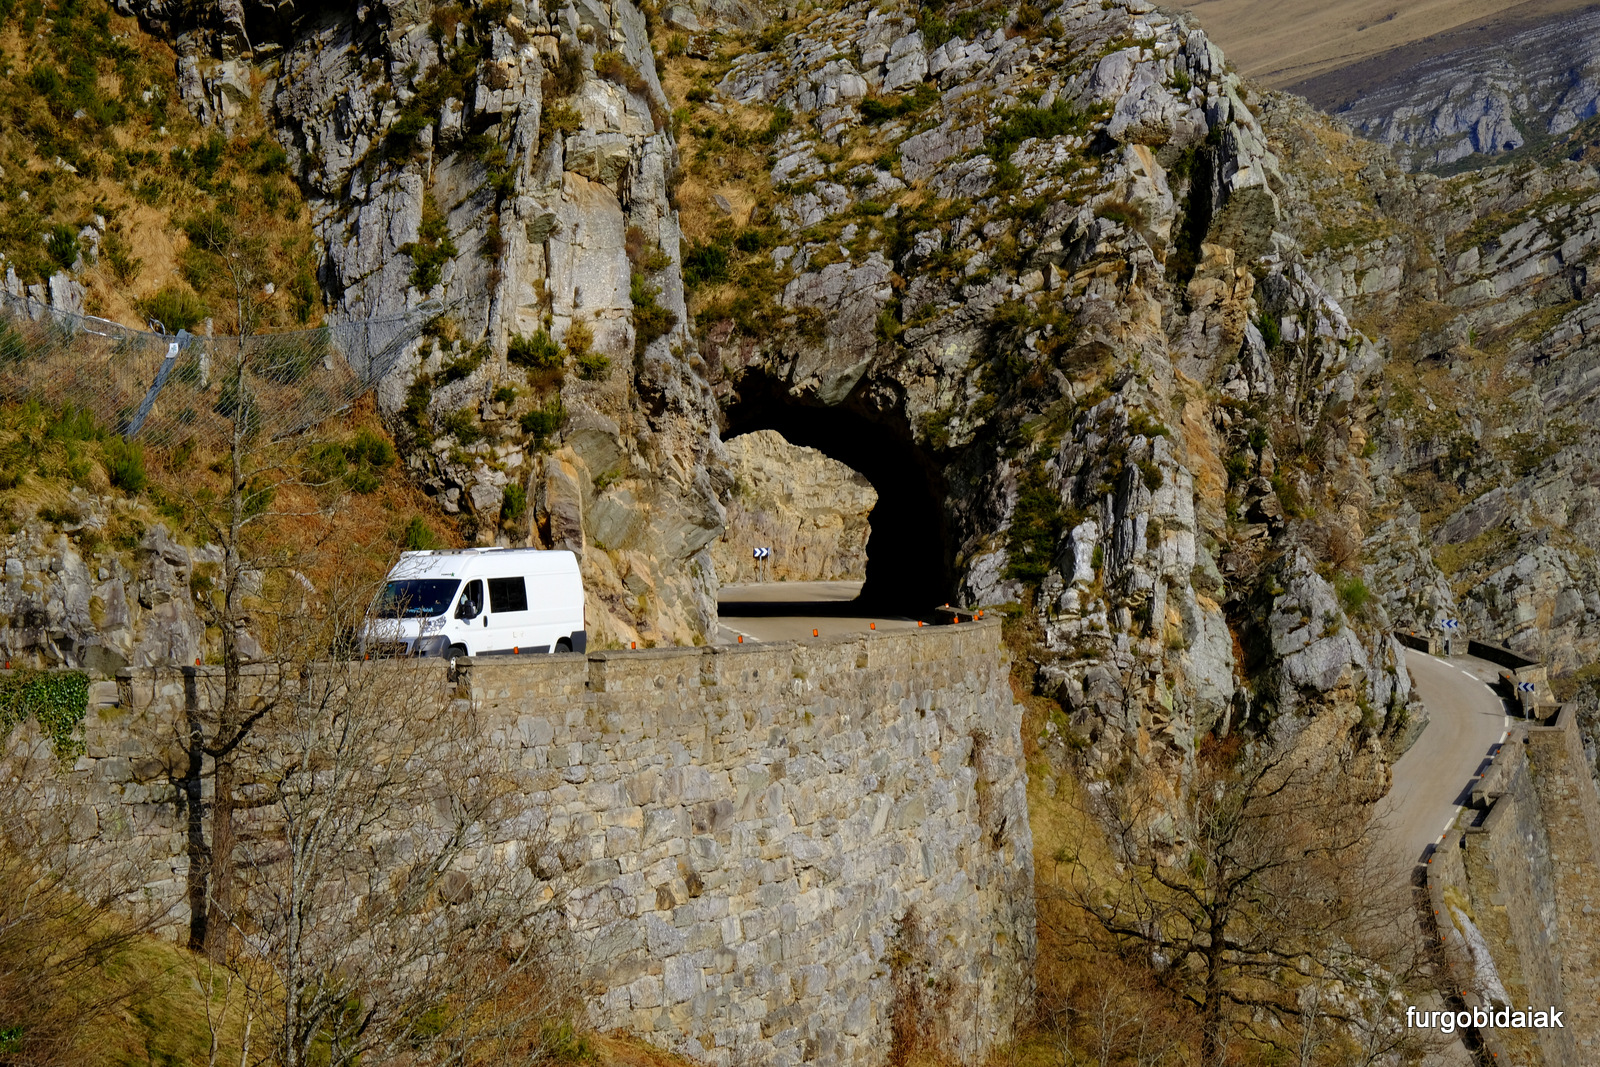 Cantabria en furgoneta camper, furgobidaiak